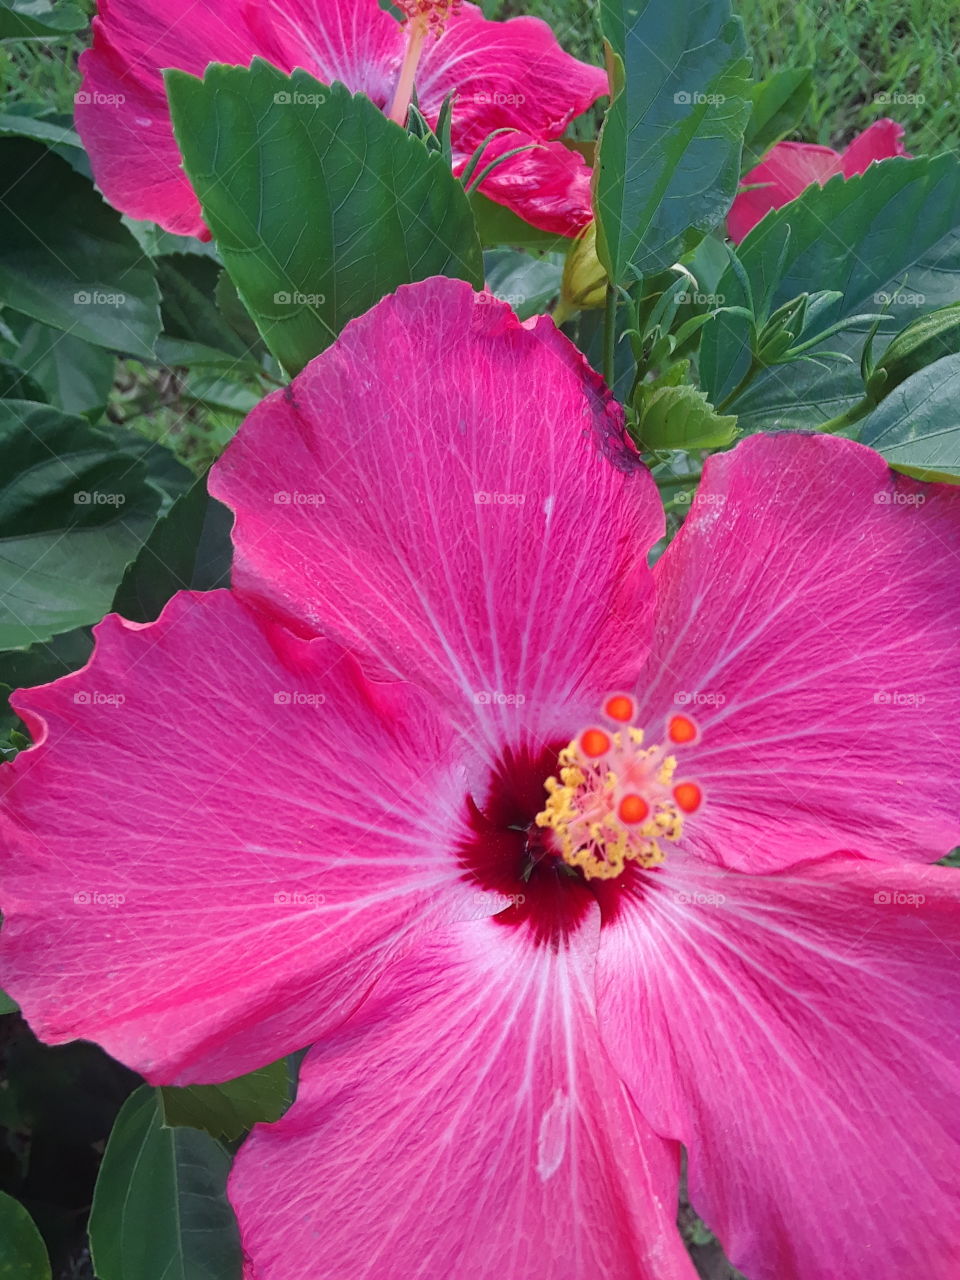 huge pink flower closeup